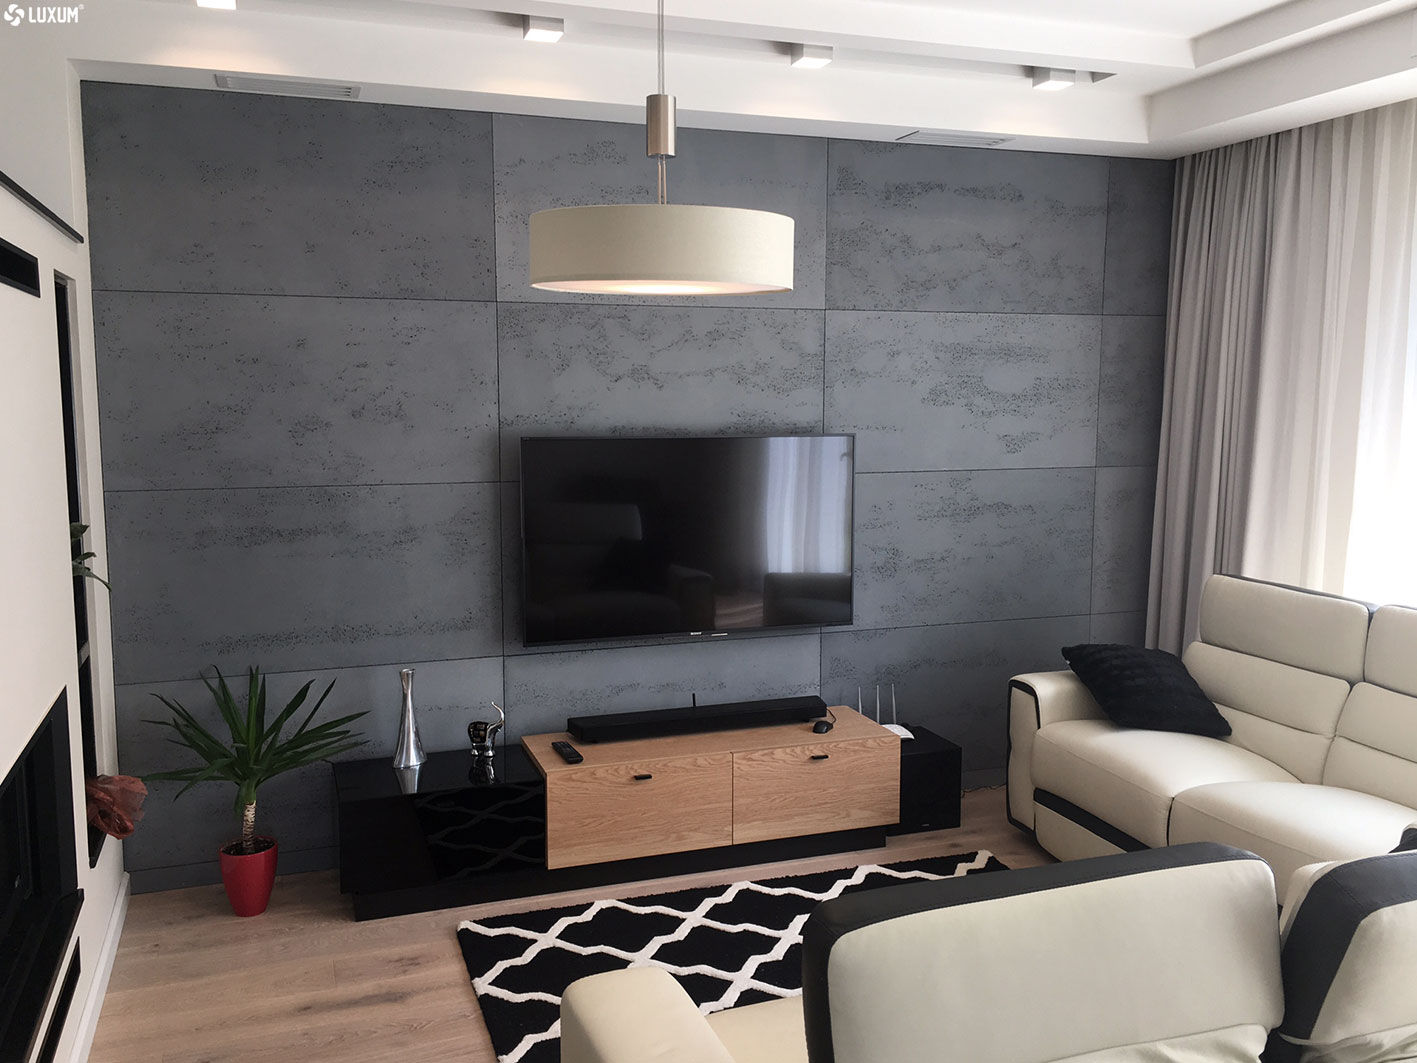 Nowoczesny salon z wykorzystaniem płyt z betonu architektonicznego, Luxum Luxum Modern living room